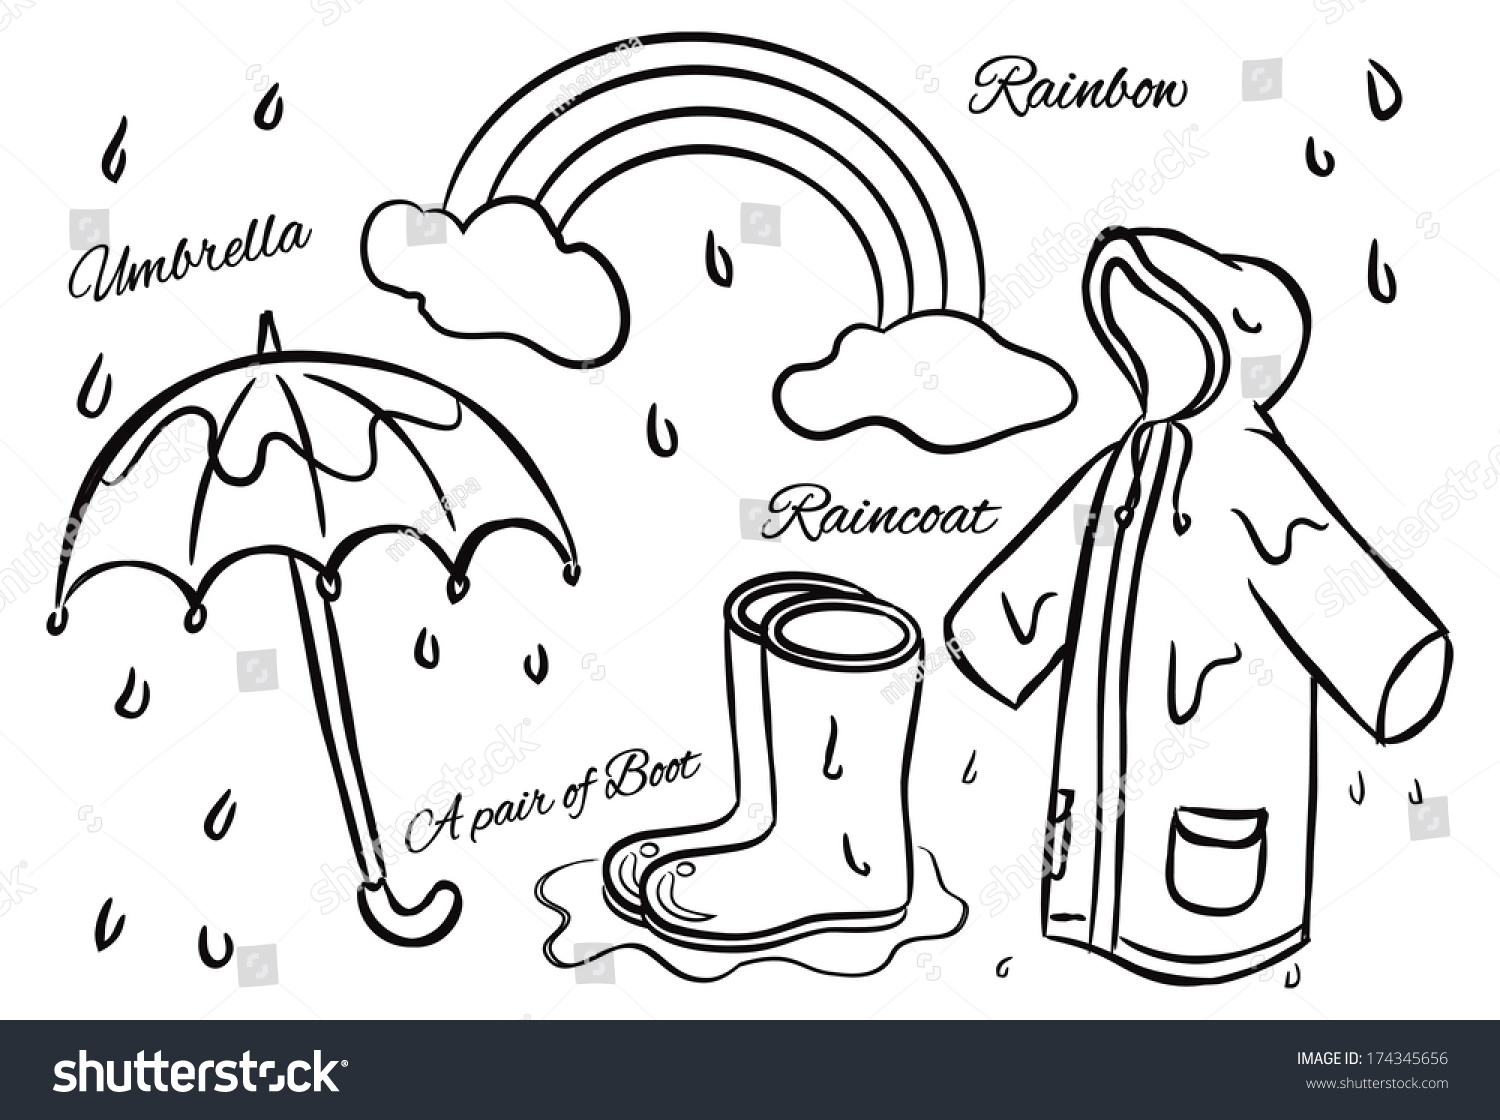 Rainy Season Stuff Doodle Stock Illustration 174345656 Shutterstock